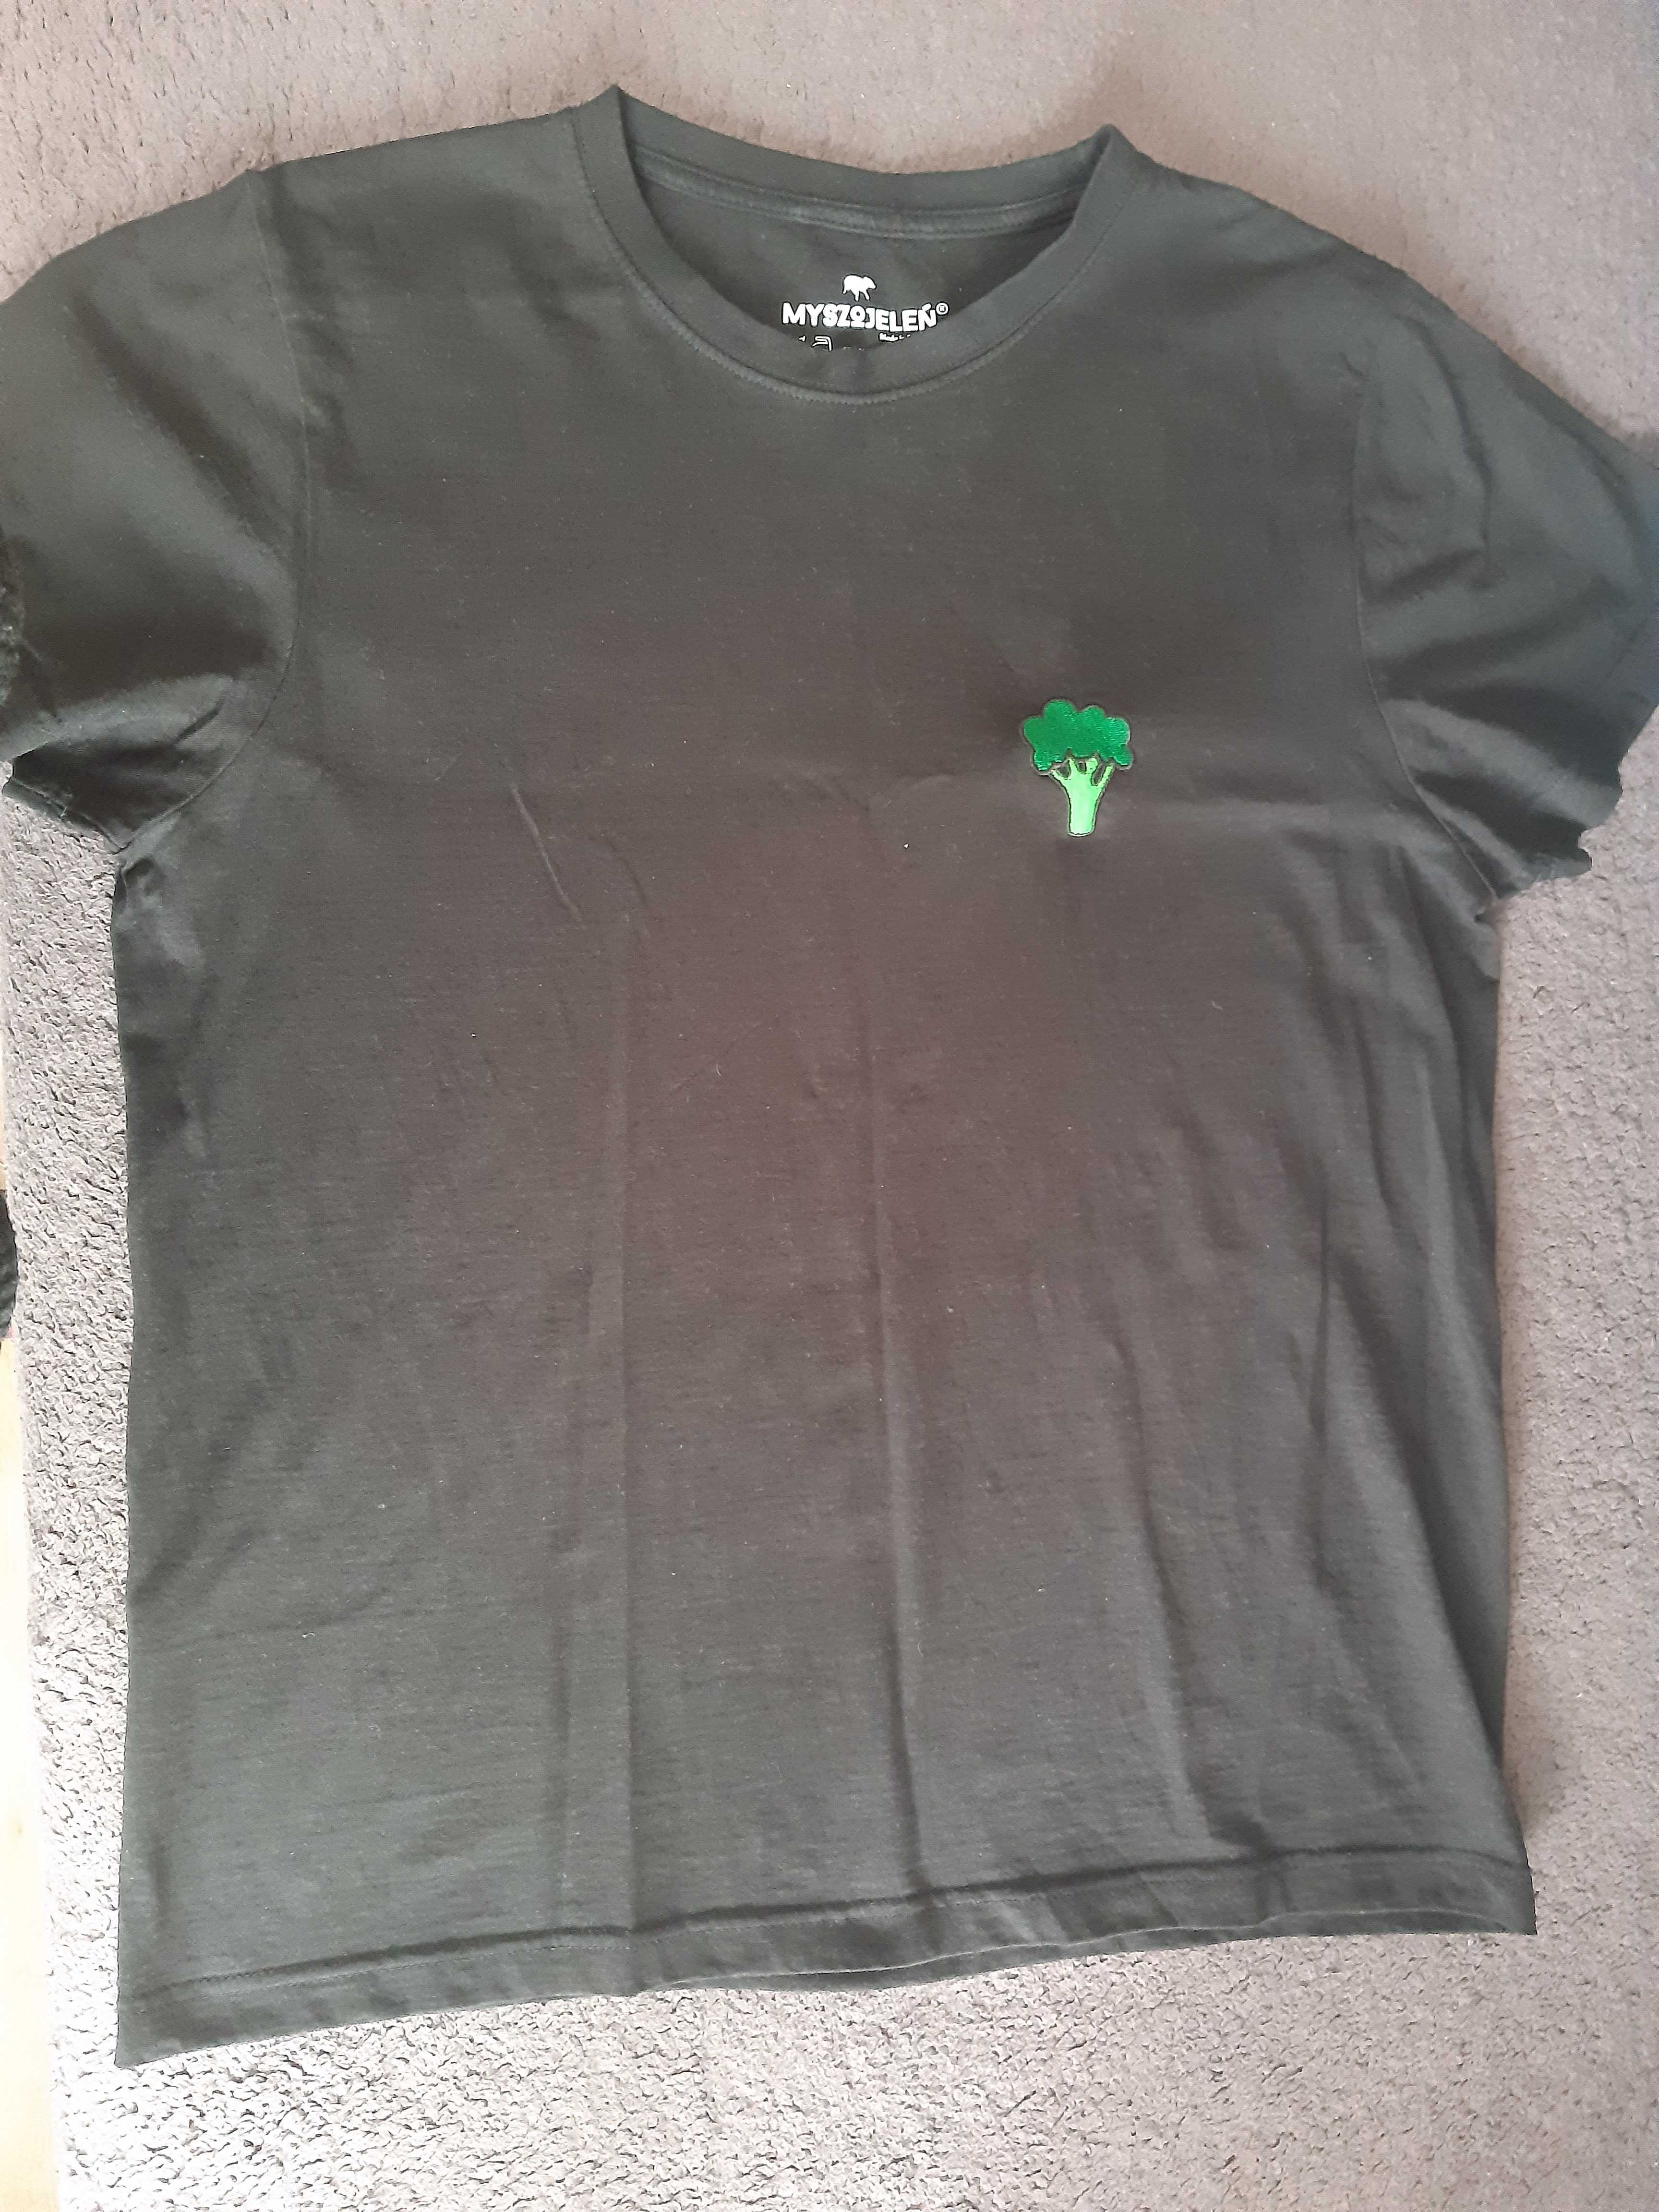 T-shirt/ koszulka Myszojeleń M/L bawełna czarna